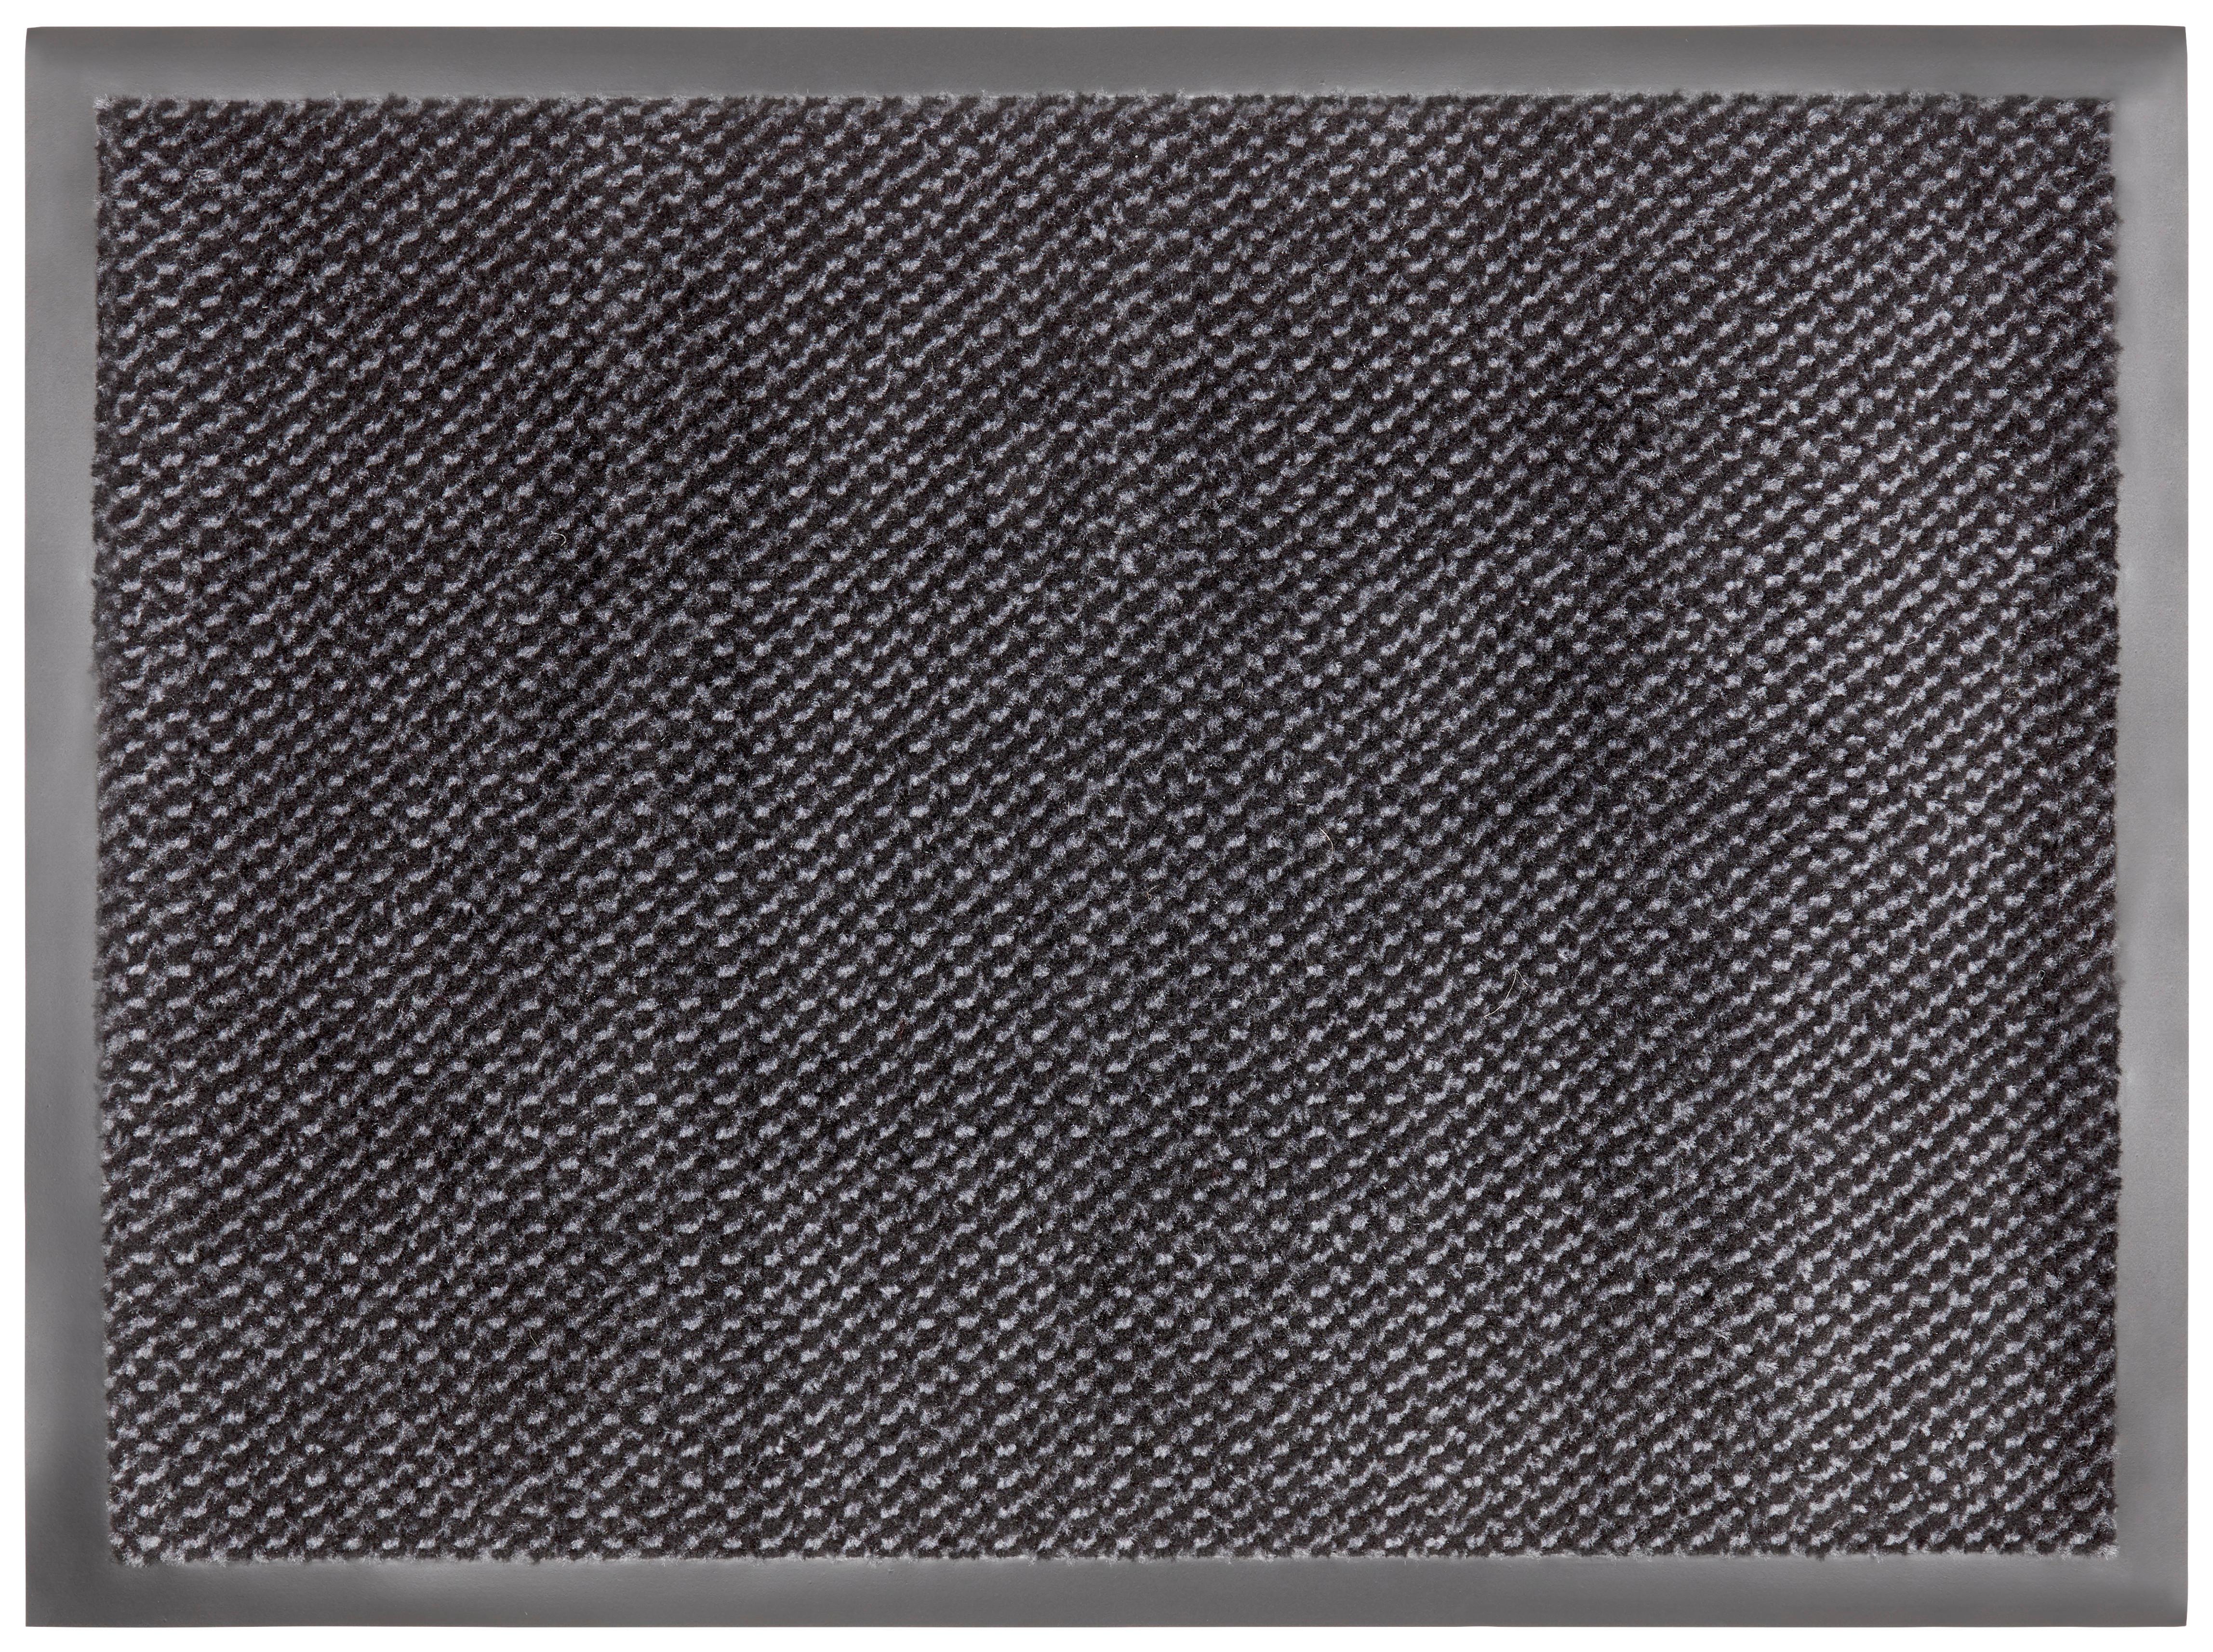 Dveřní Rohožka Hamptons 2, 60/80cm - šedá/černá, Konvenční, textil (60/80cm) - Modern Living